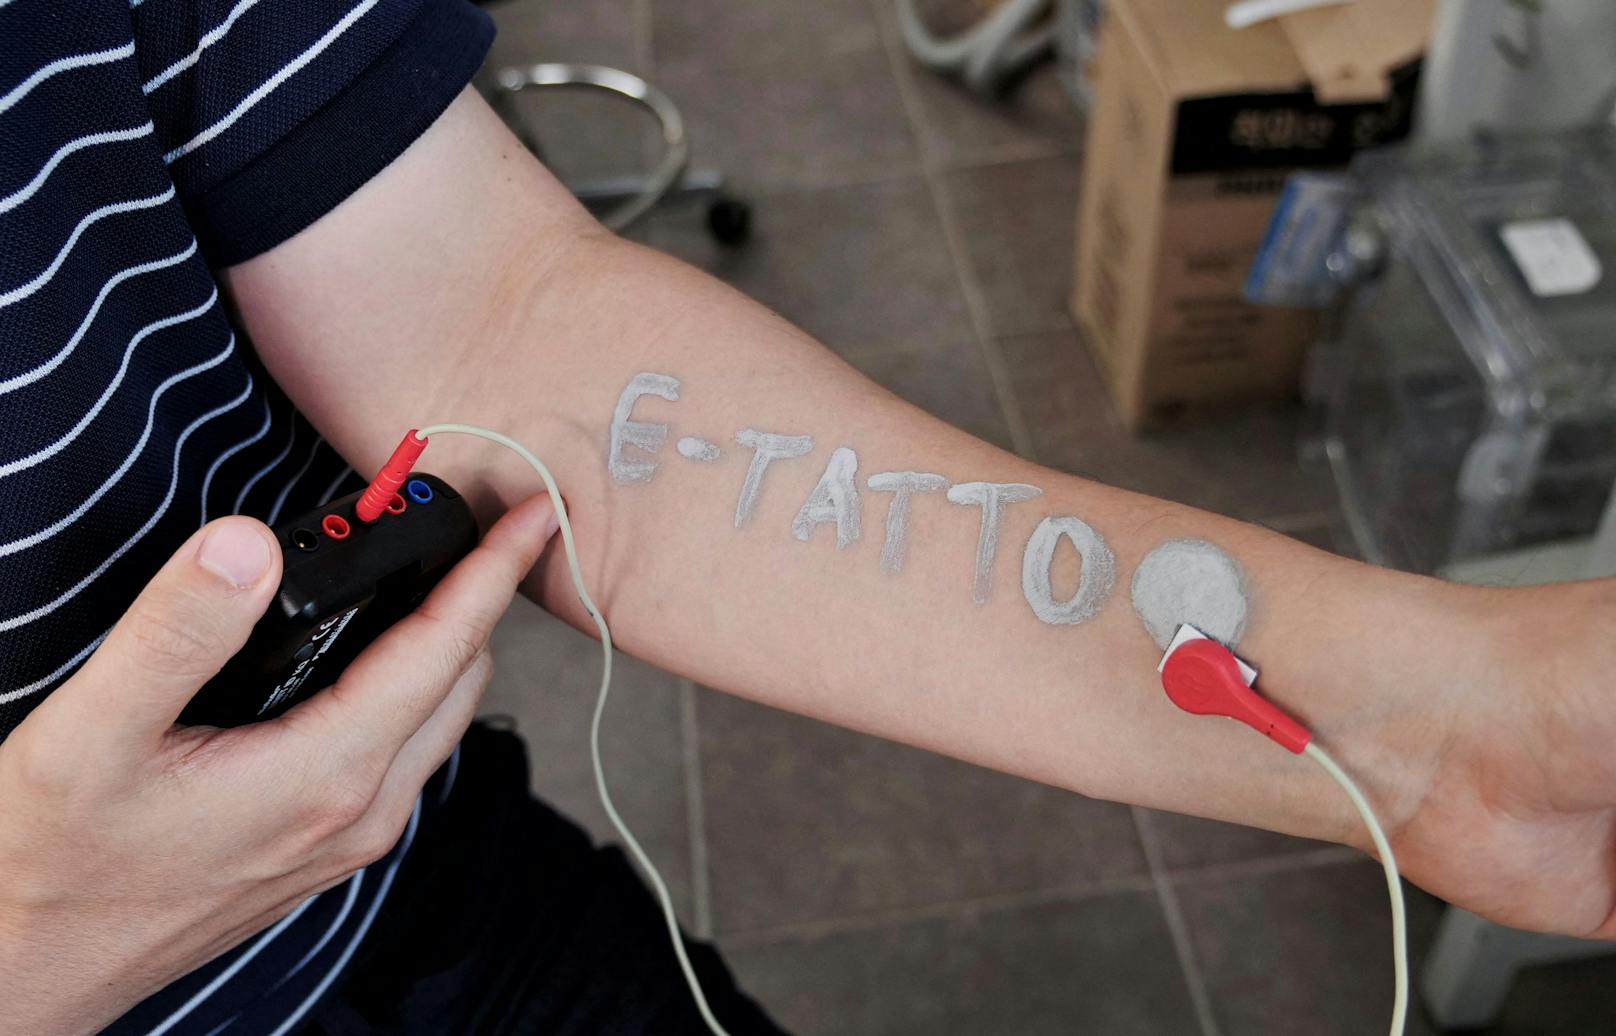 Sieht so die Zukunft aus? Ein elektronisches Tattoos gibt Auskunft über Vitalwerte wie Puls und Blutzucker.